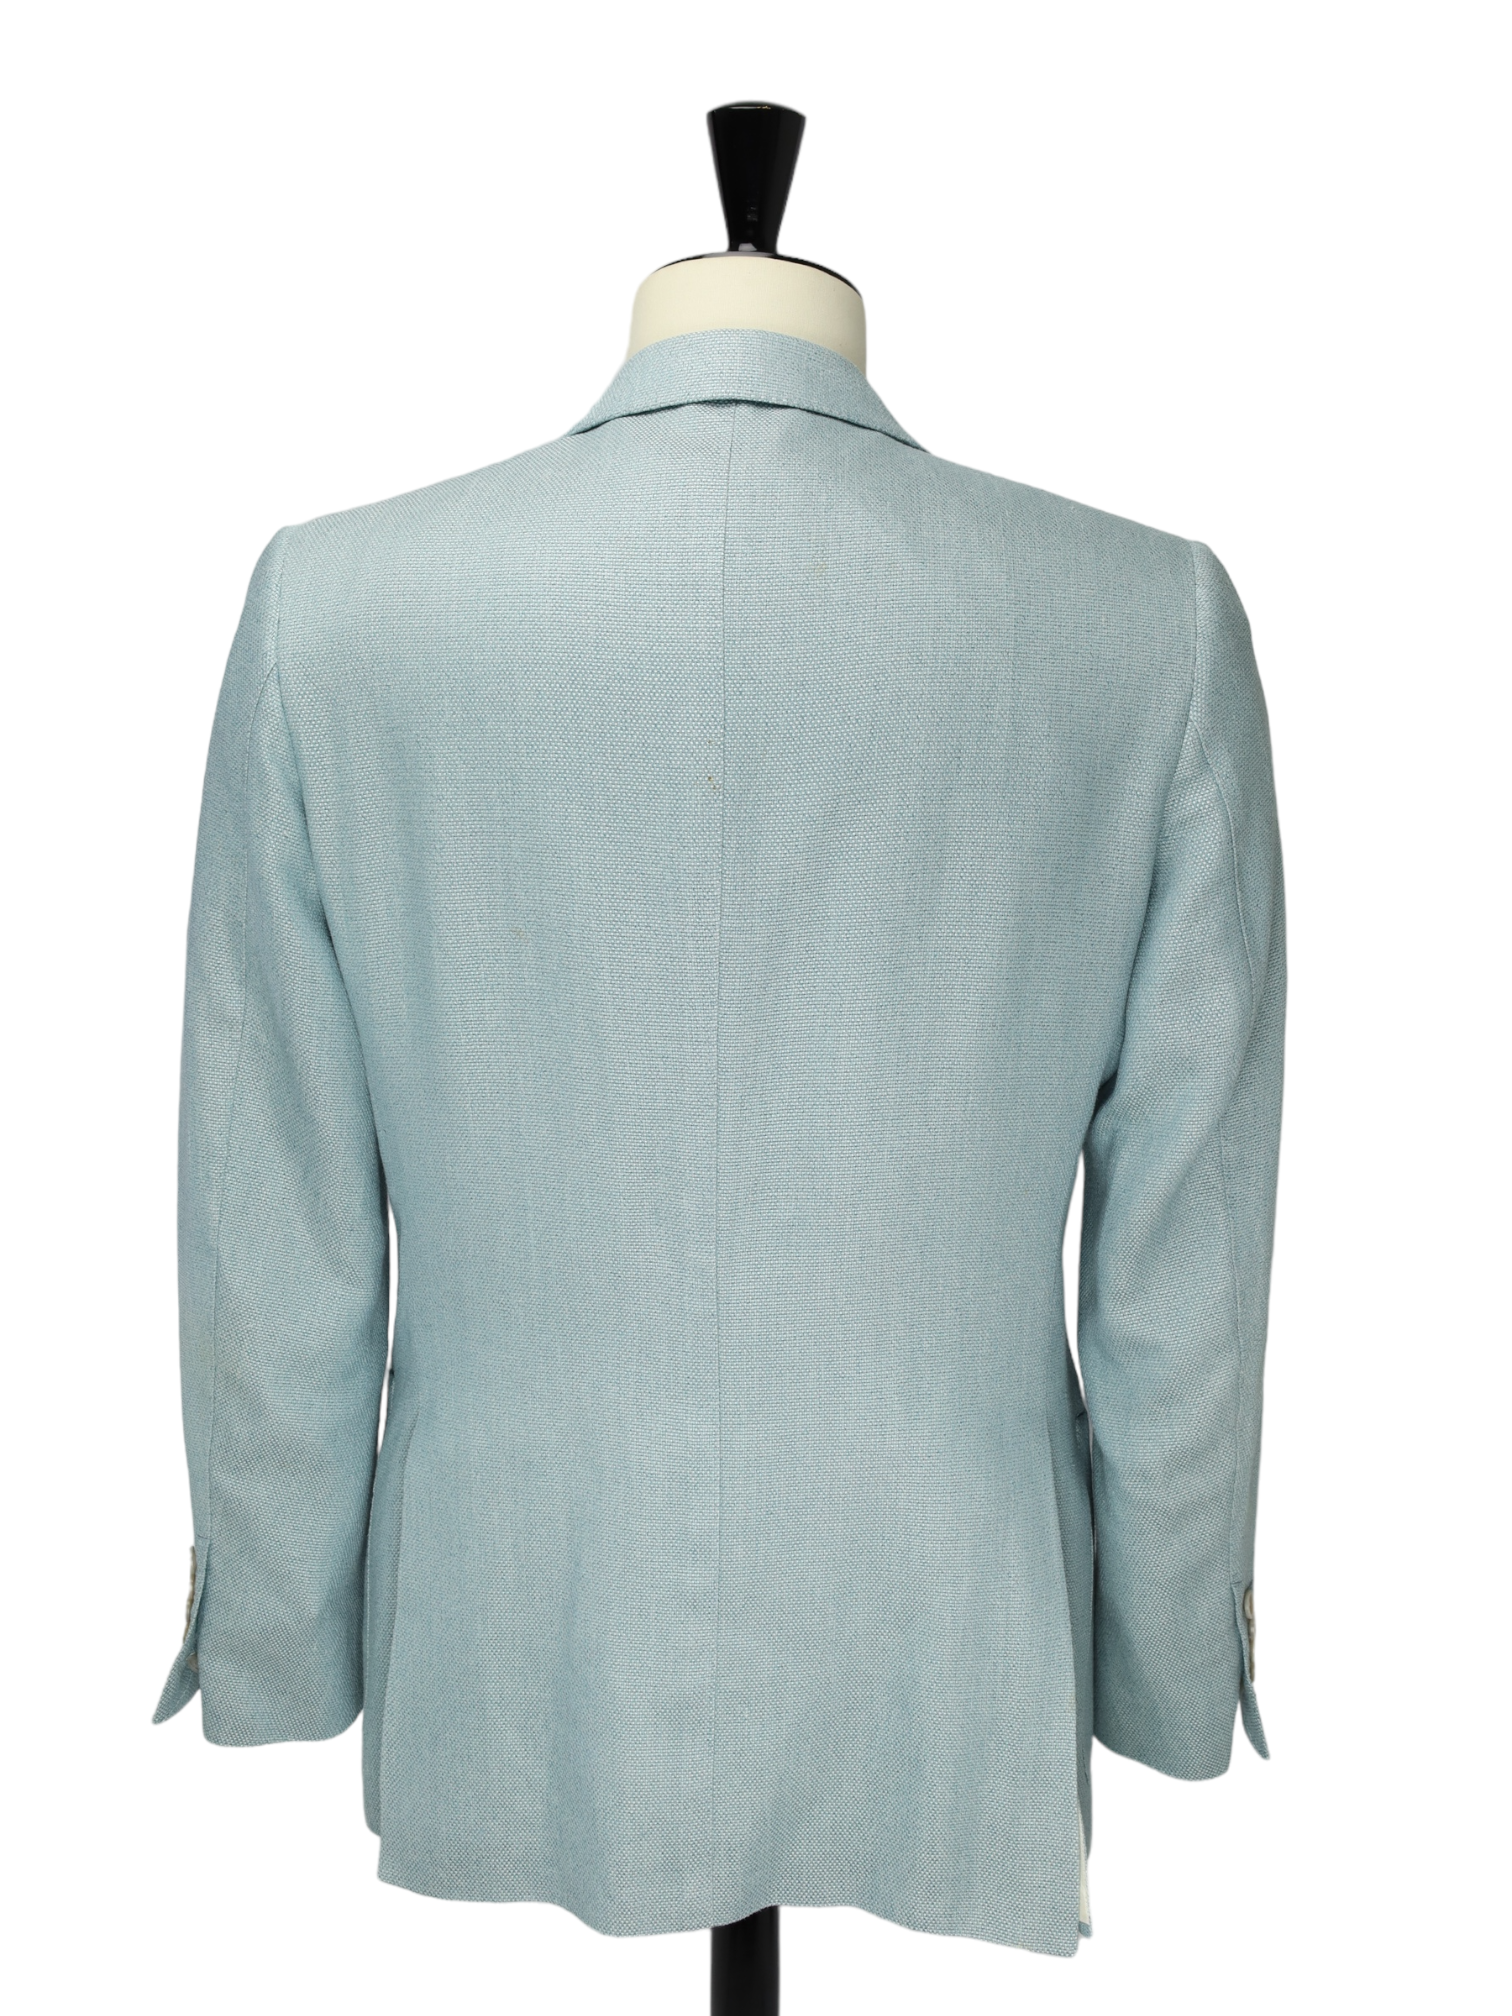 Tom Ford Light Blue Silk, Linen & Cotton Windsor Jacket